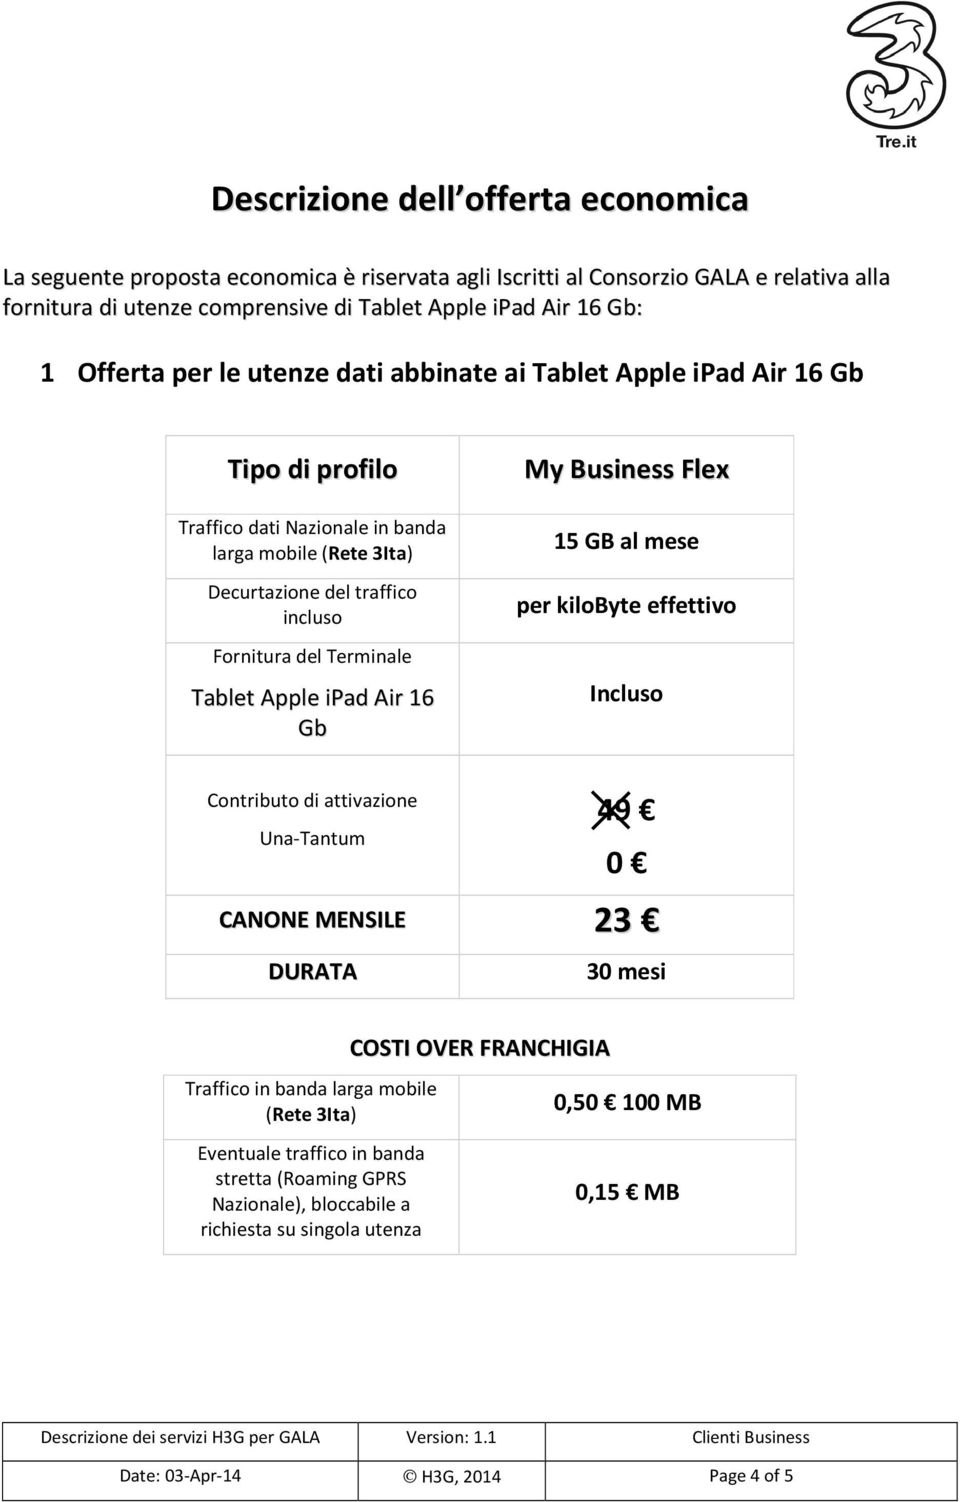 Terminale Tablet Apple ipad Air 16 Gb My Business Flex 15 GB al mese per kilobyte effettivo Incluso Contributo di attivazione Una-Tantum 49 0 CANONE MENSILE 23 DURATA 30 mesi Traffico in banda